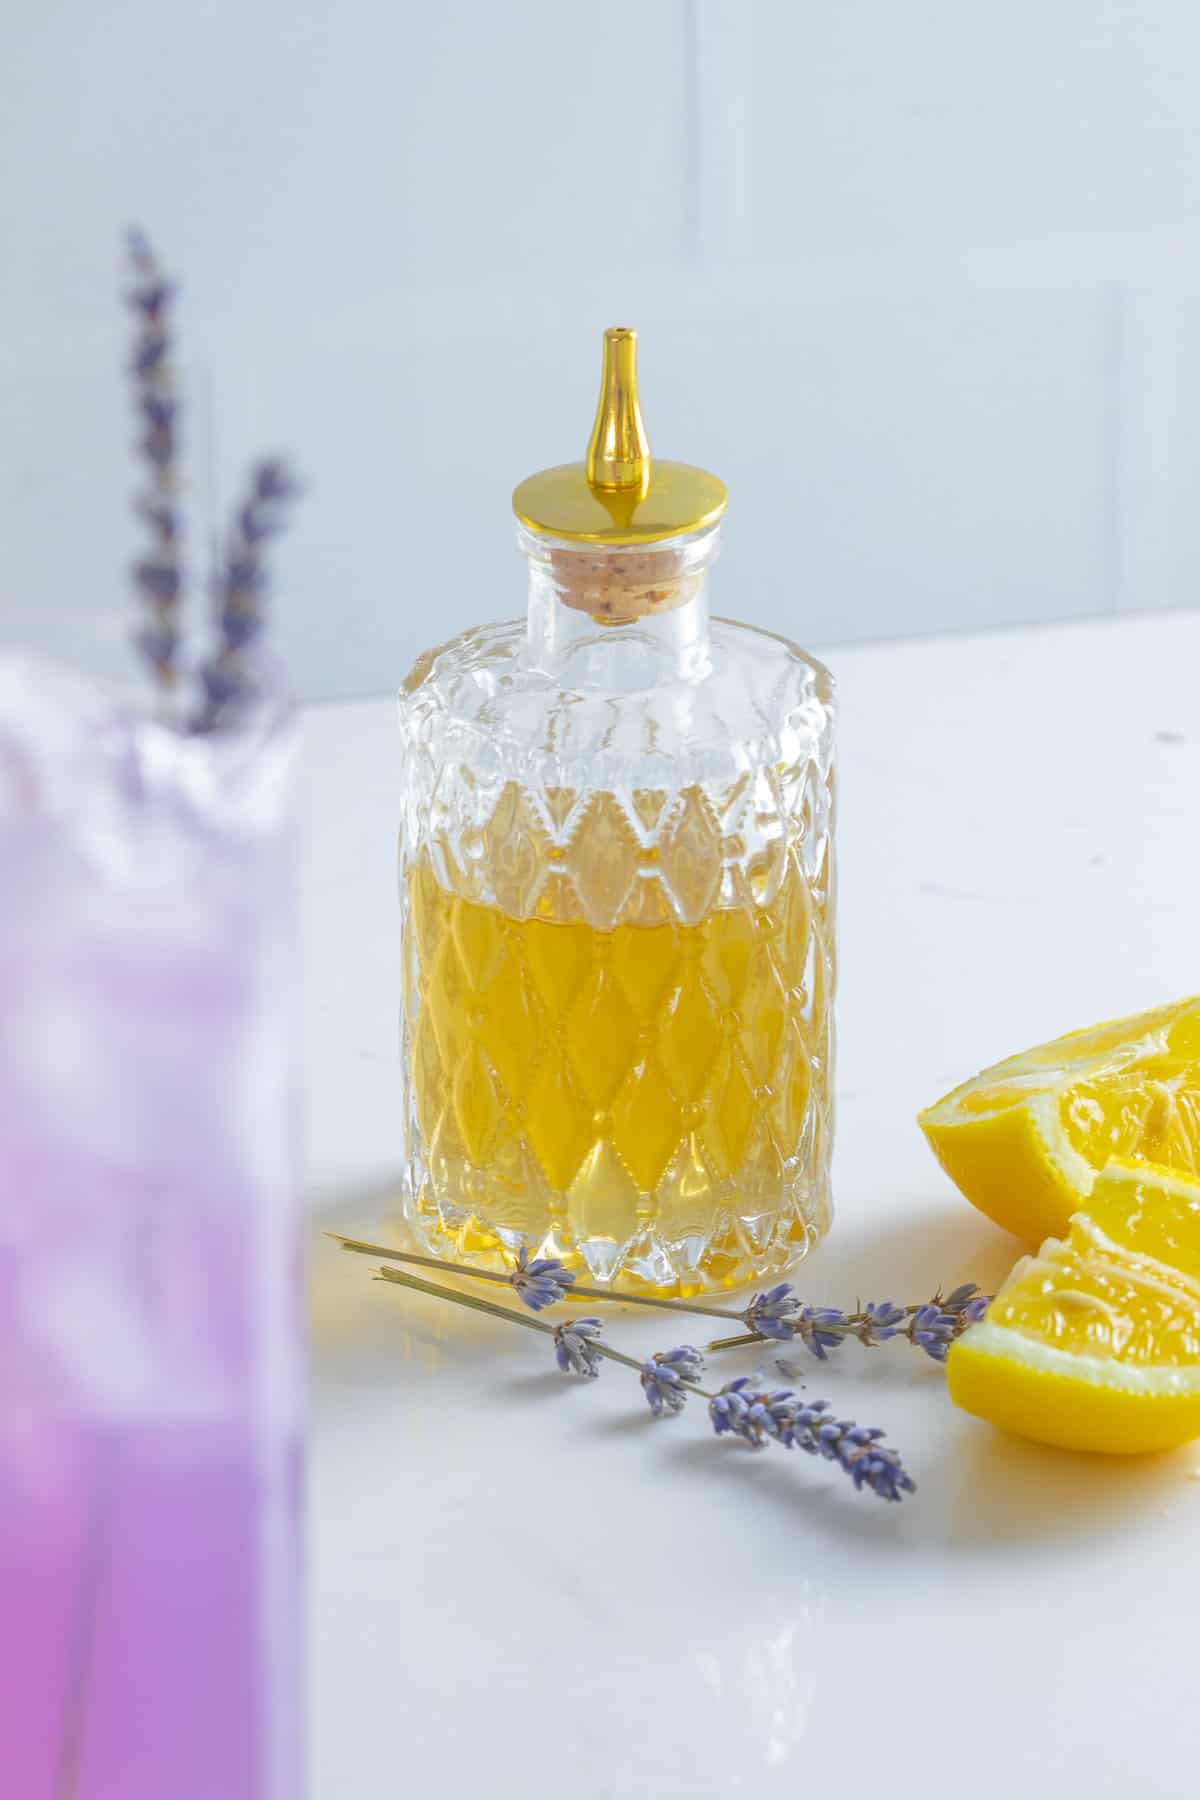 Lavender syrup for lemonade.